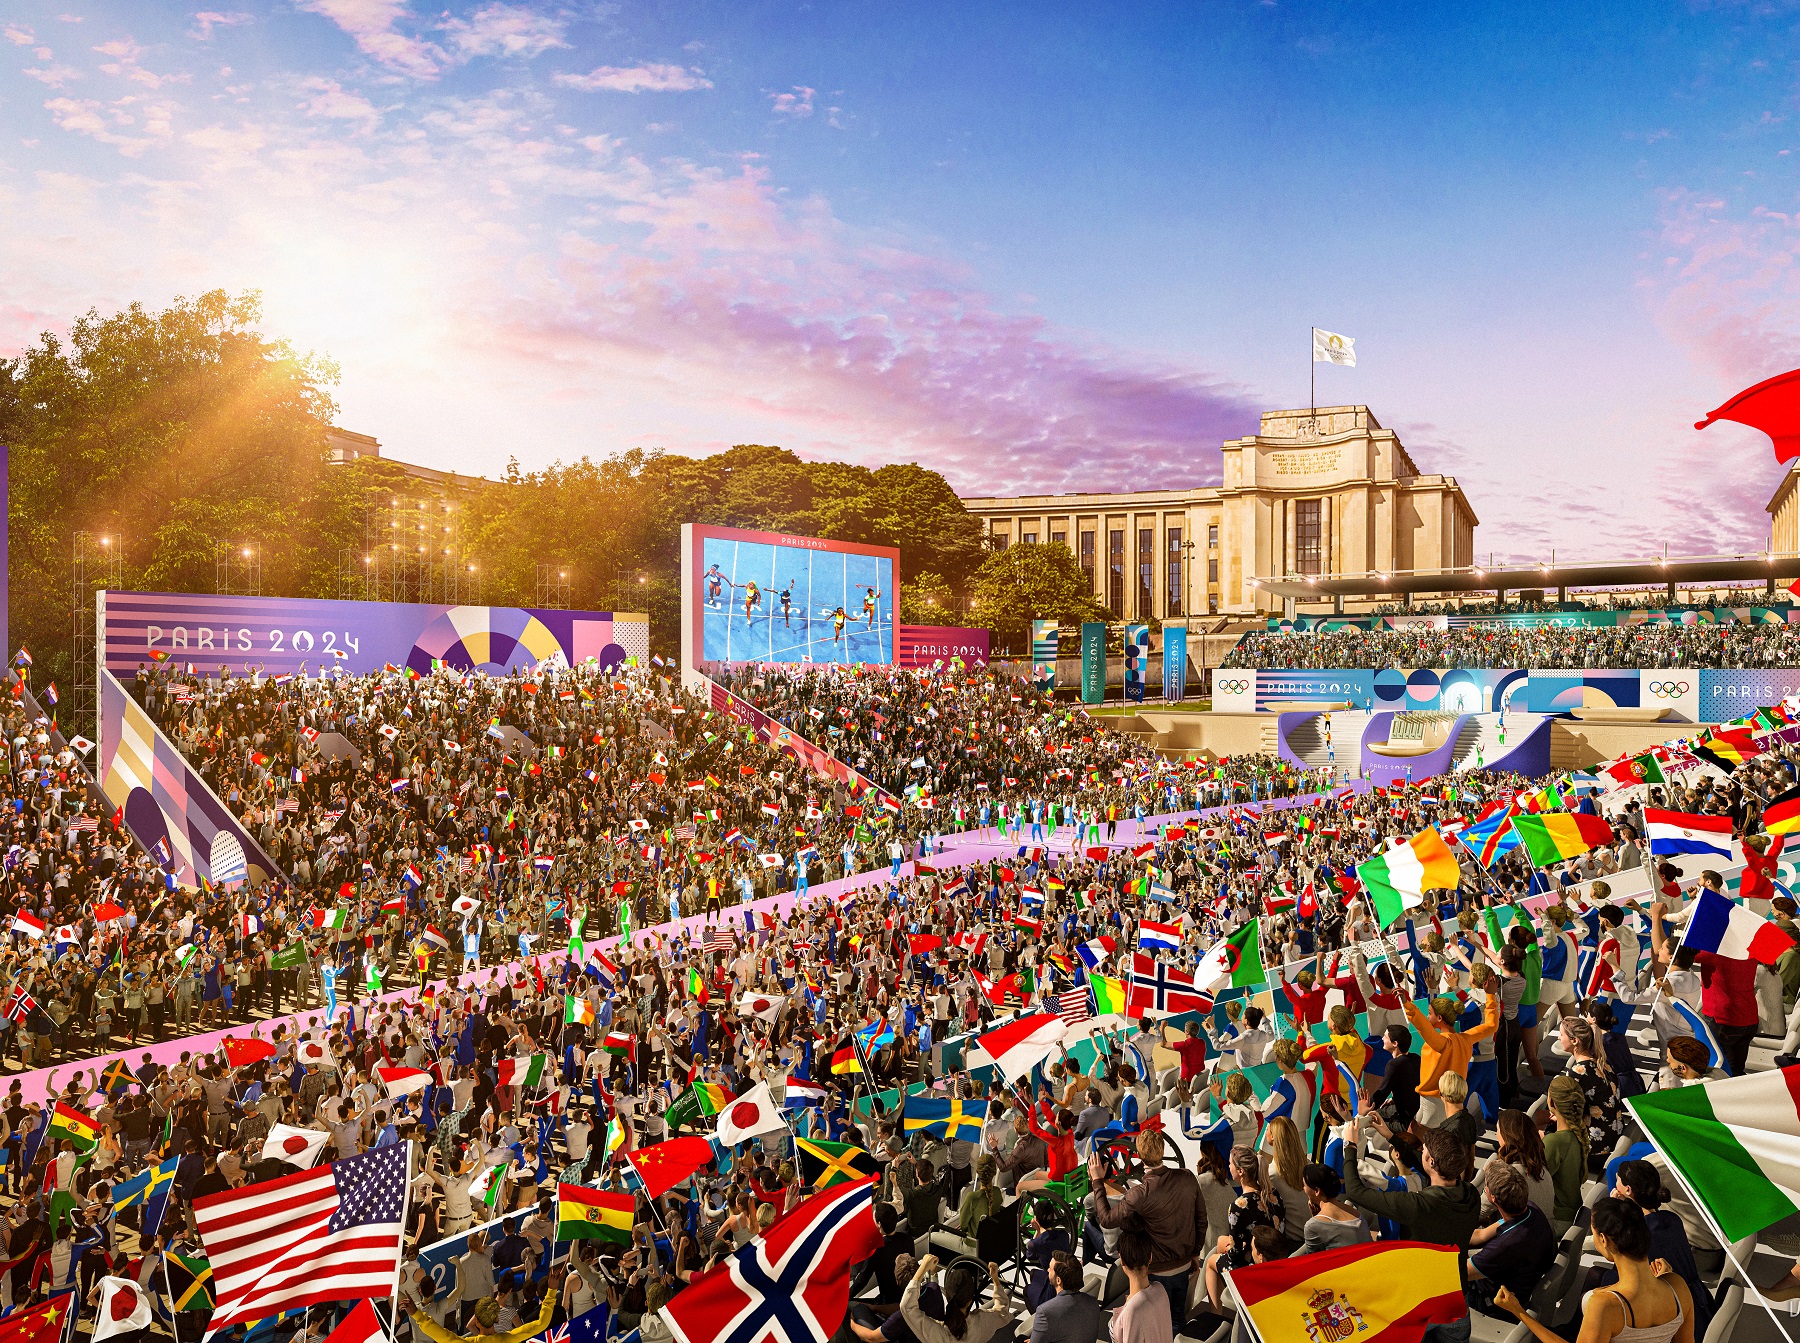 Jeux Olympiques : Paris 2024 dévoile le futur site olympique de la